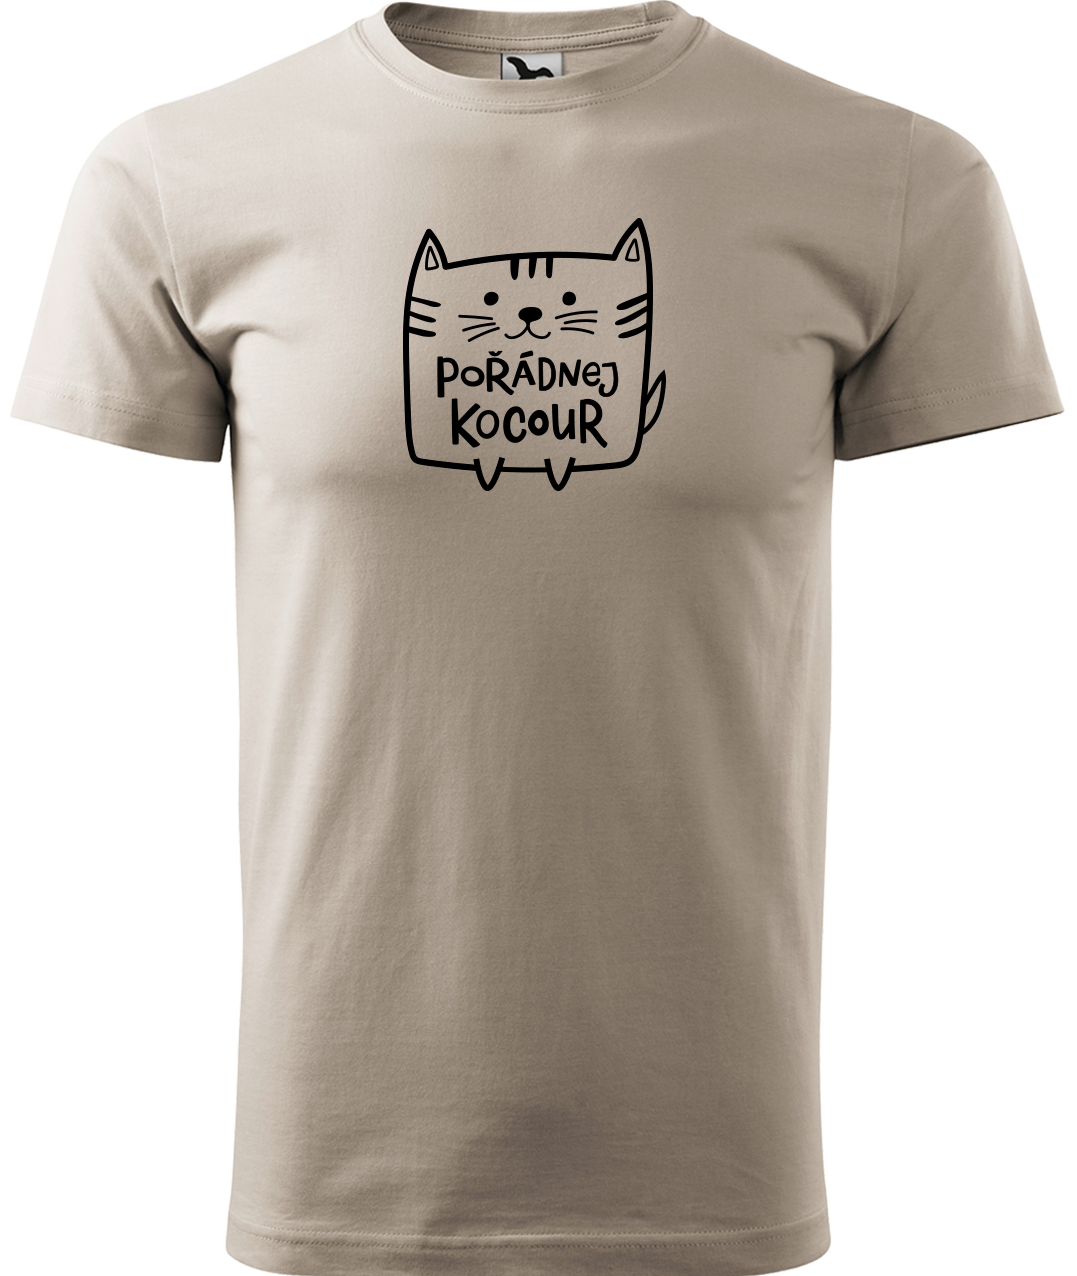 Pánské tričko s kočkou - Pořádnej kocour Velikost: S, Barva: Ledově šedá (51)